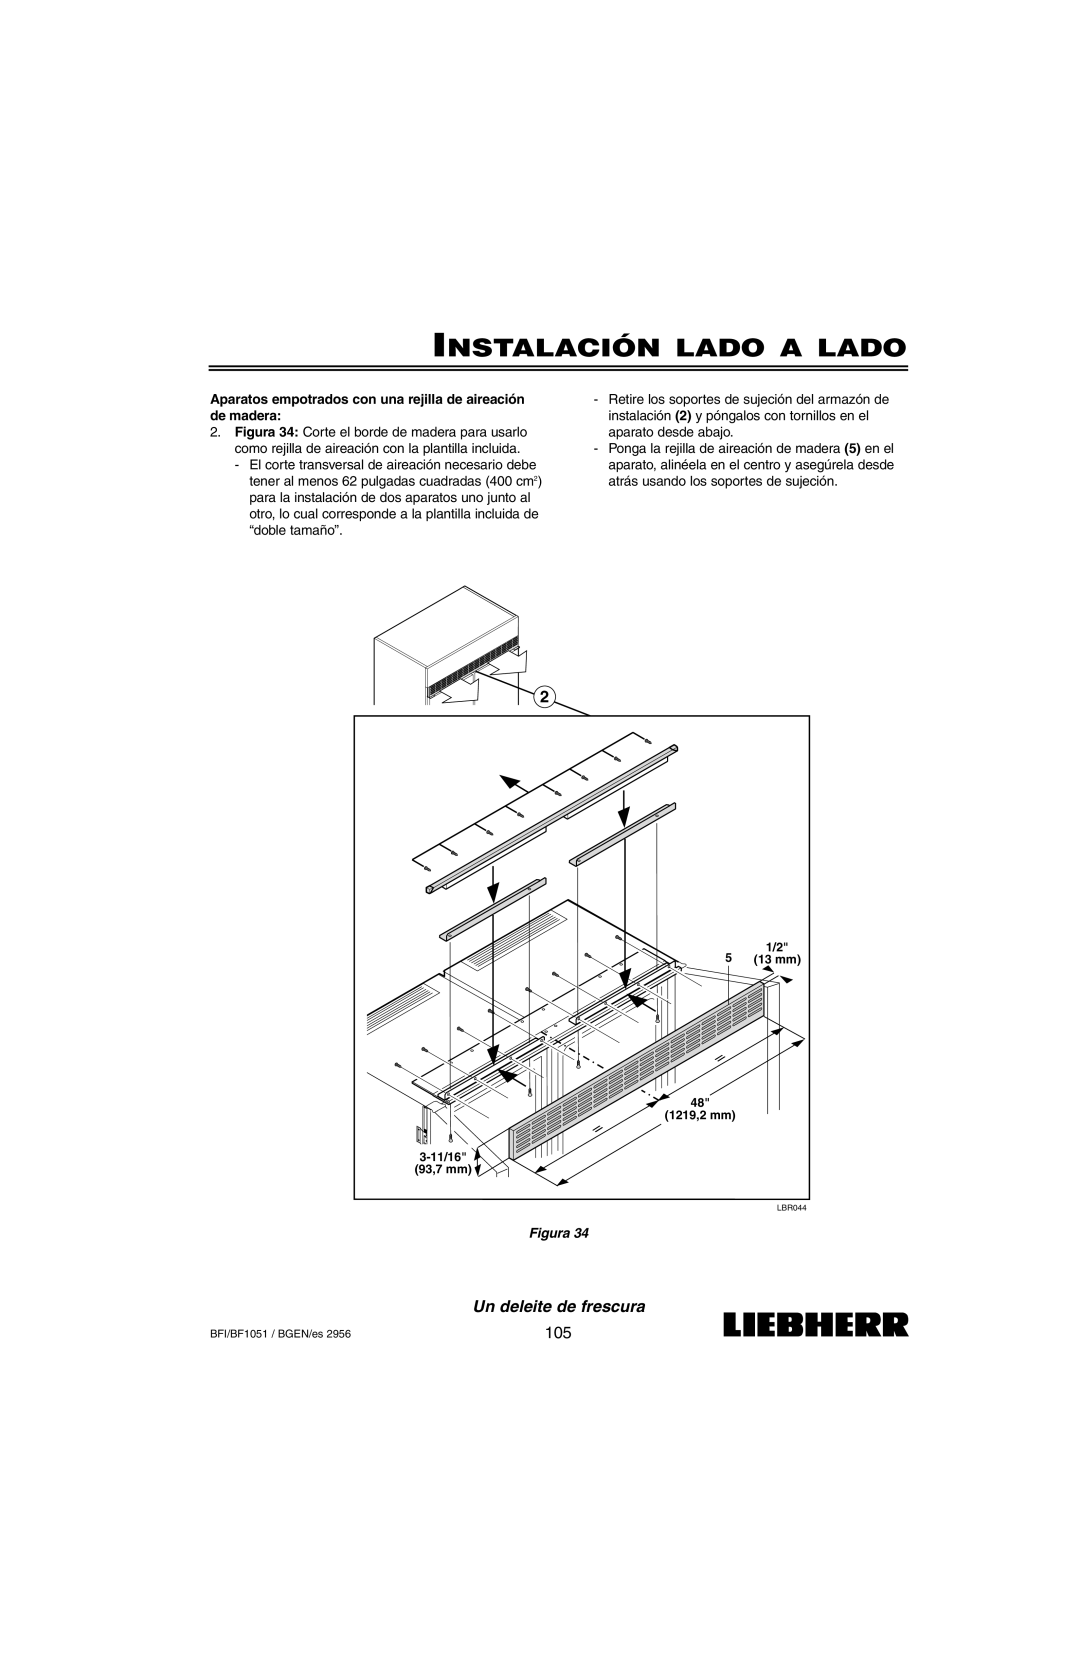 Liebherr BF1051, BFI1051 installation instructions Instalación Lado A Lado, Un deleite de frescura, Figura 